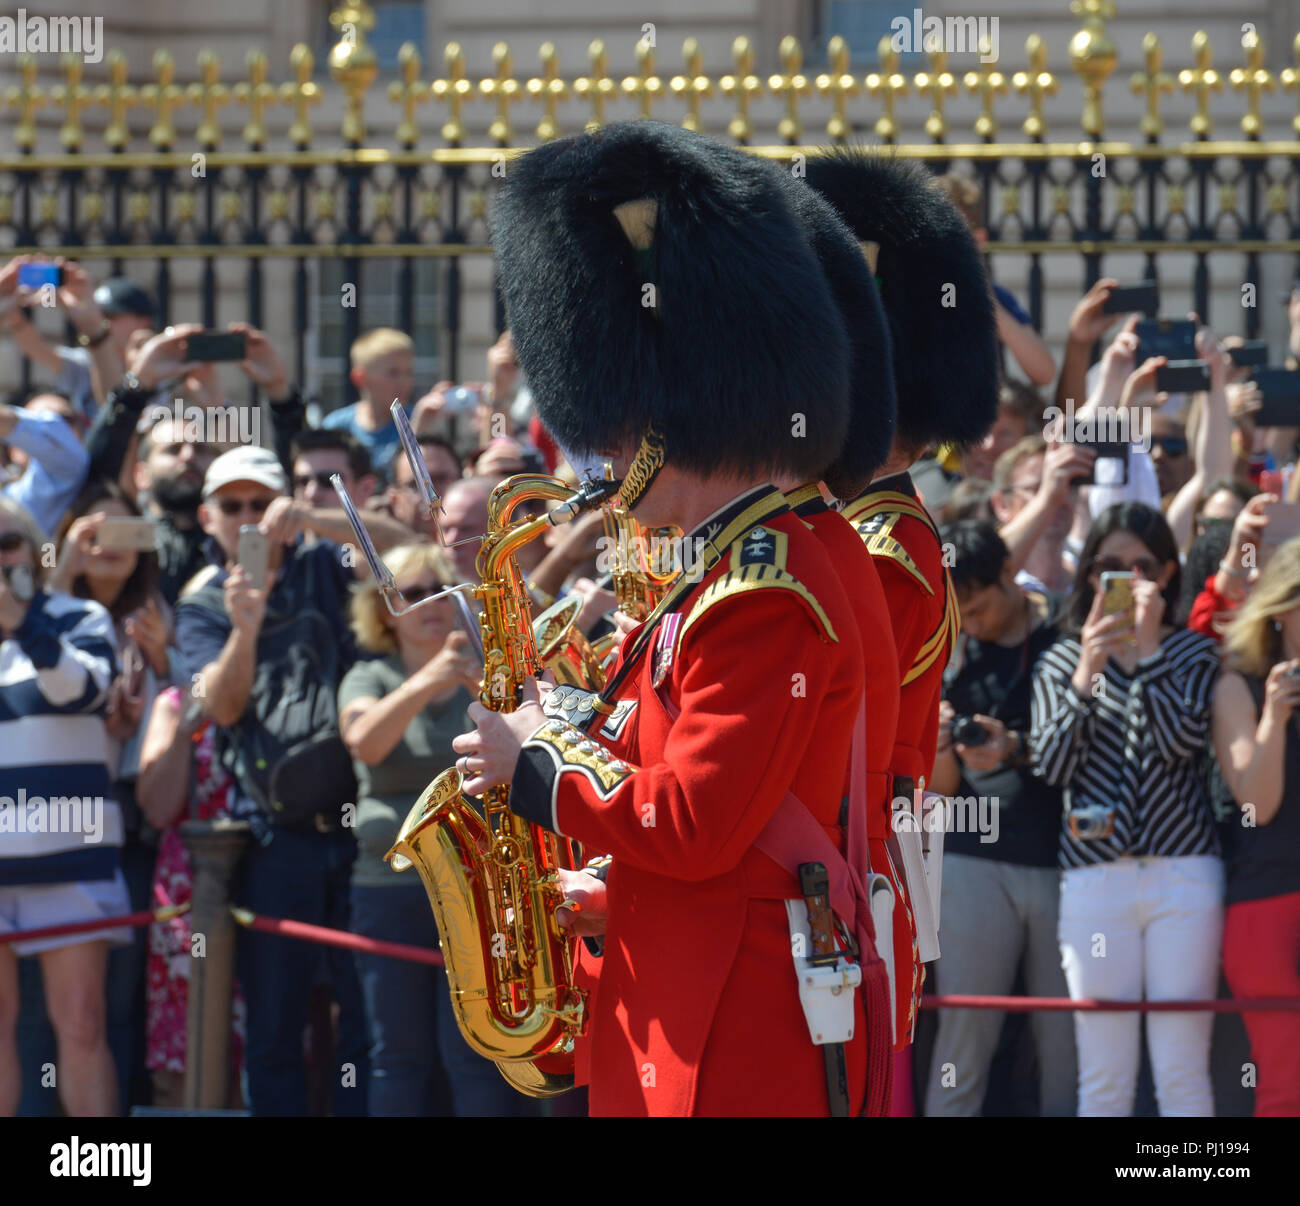 Banda, el cambio de guardia, el Palacio de Buckingham, Londres, Inglaterra, Grossbritannien Foto de stock